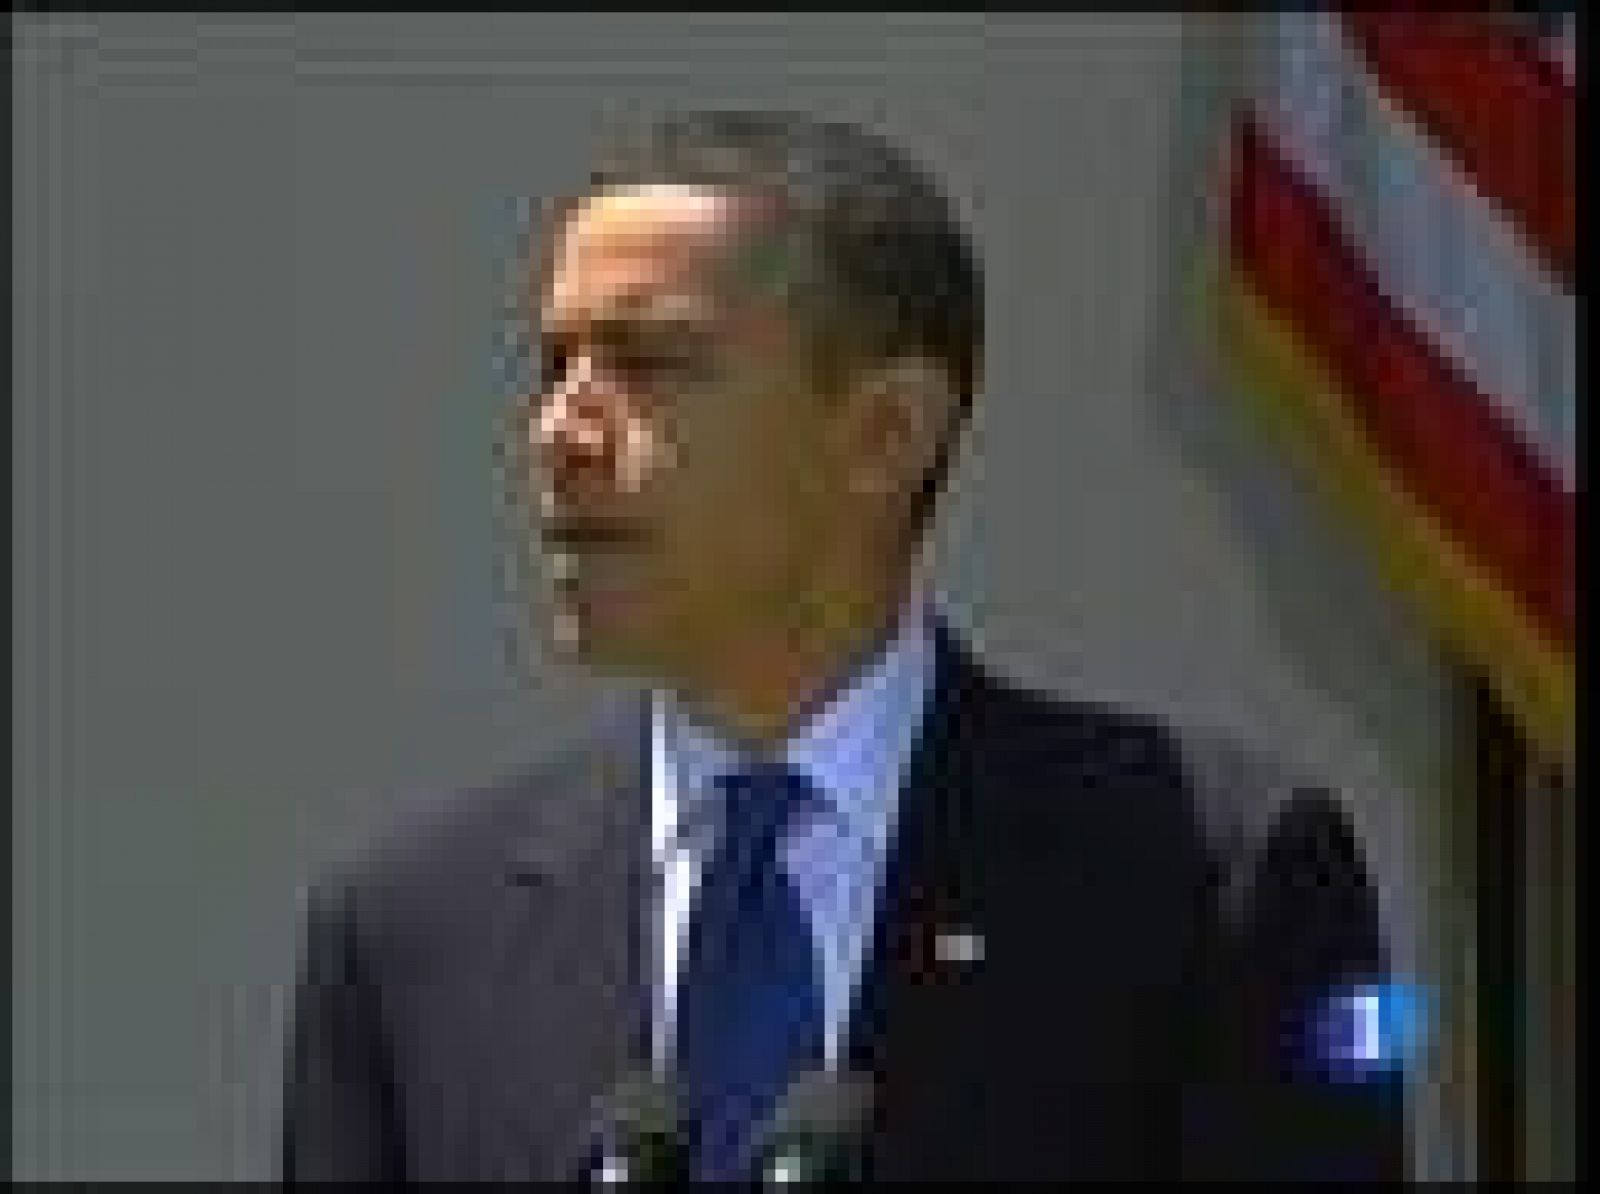 La bajada del paro es de una décima pero, según el presidente Obama, confirma que lo peor ha pasado.